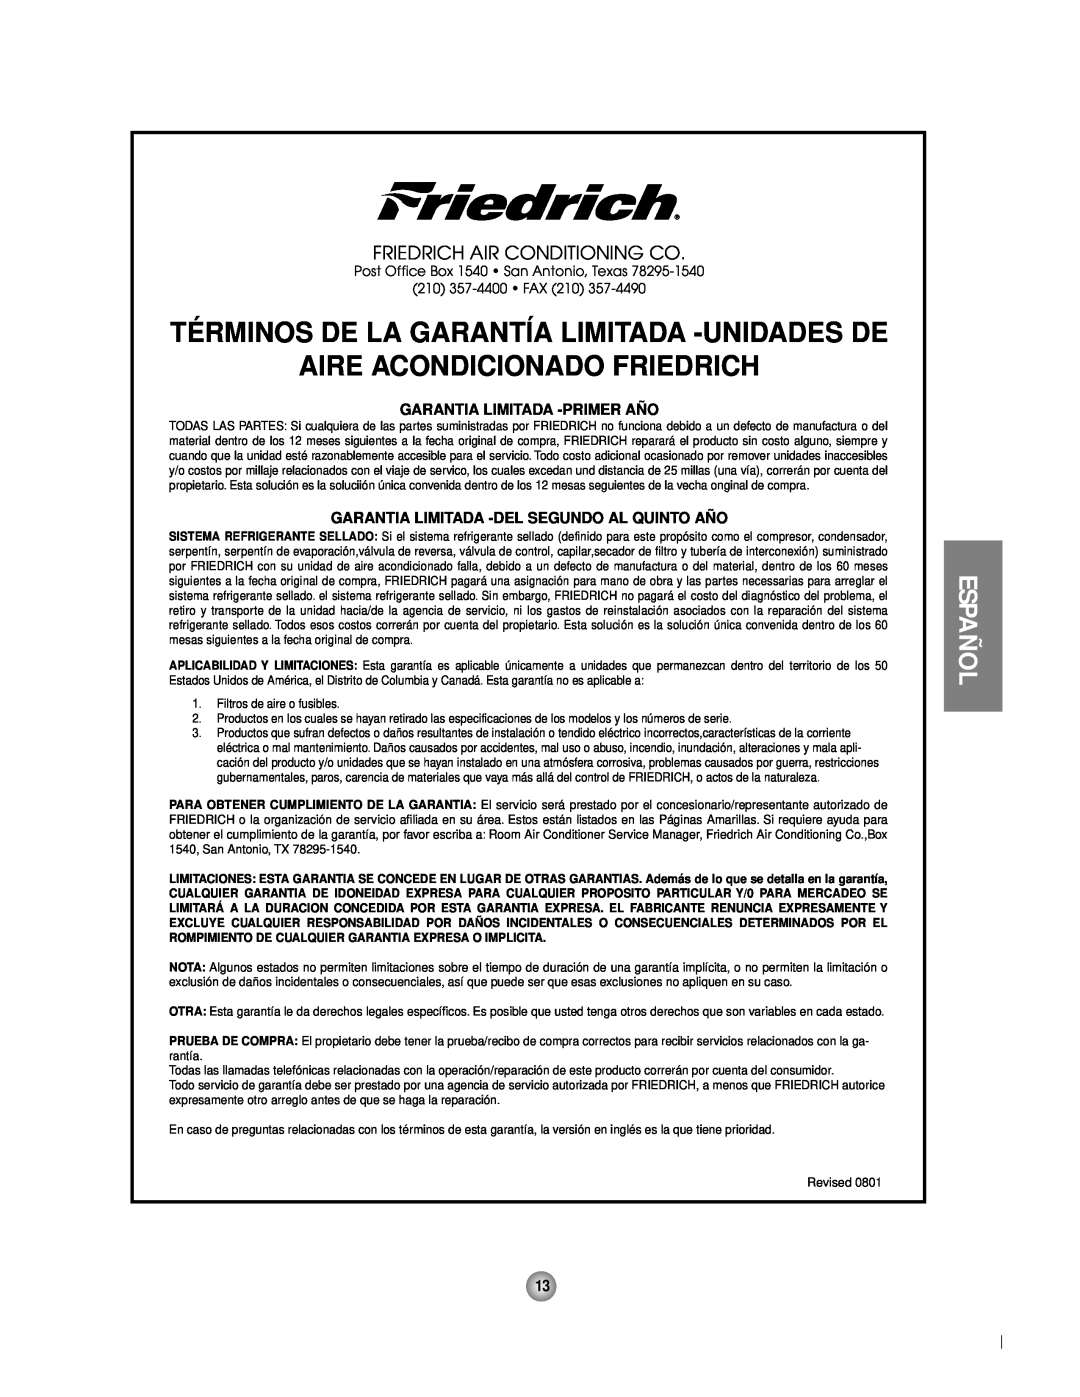 Friedrich CP06 manual Términos De La Garantía Limitada -Unidadesde, Aire Acondicionado Friedrich, Español, 210 357-4400 FAX 